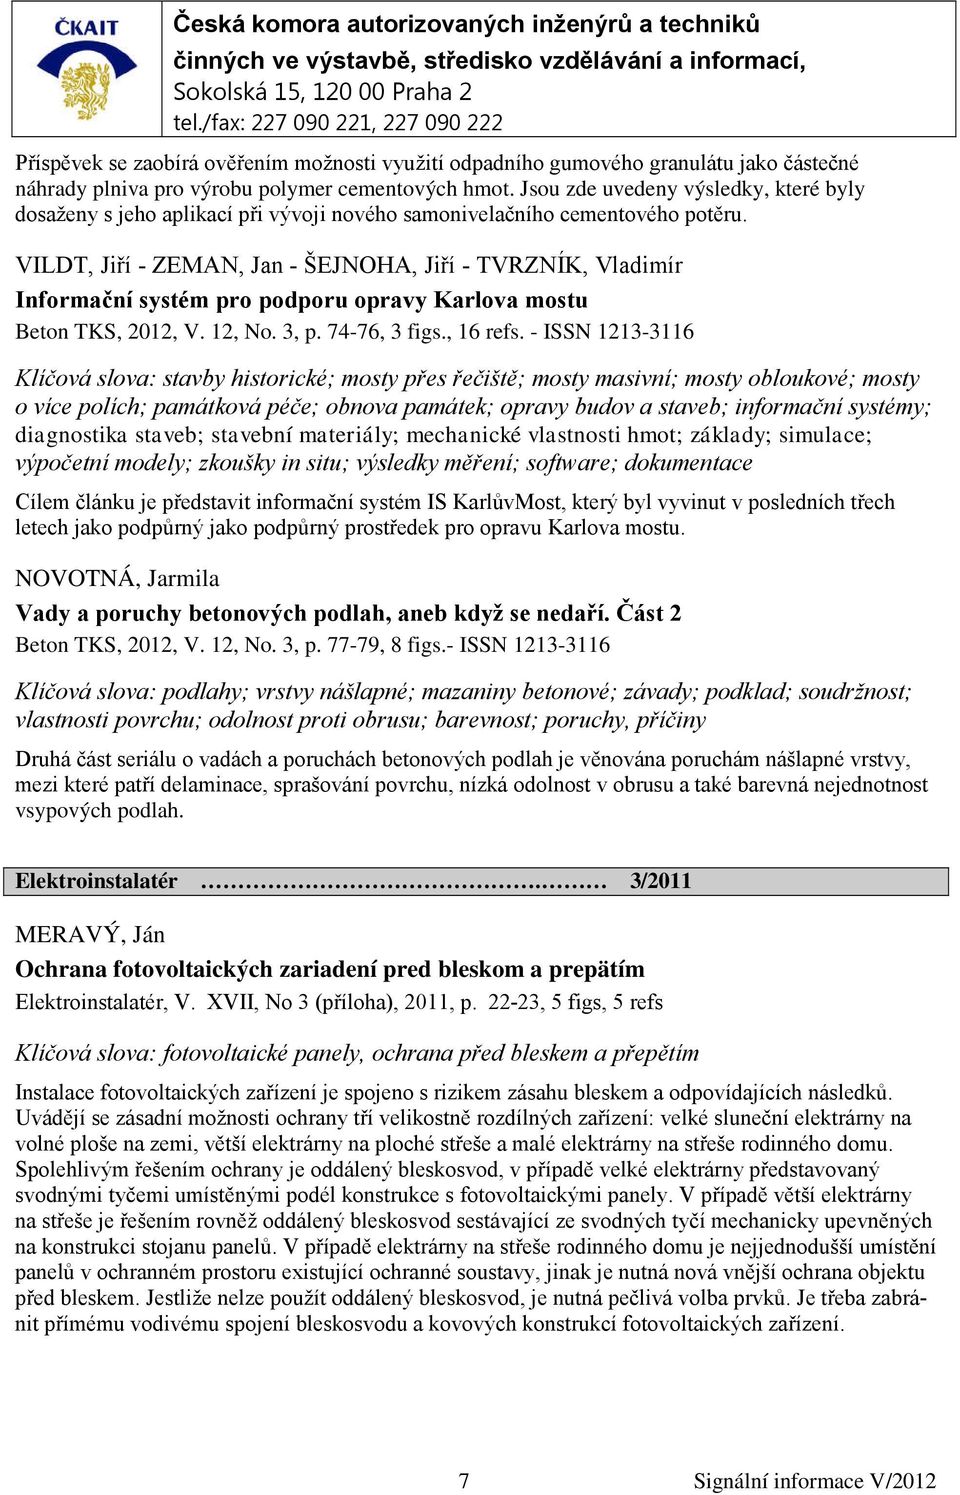 VILDT, Jiří - ZEMAN, Jan - ŠEJNOHA, Jiří - TVRZNÍK, Vladimír Informační systém pro podporu opravy Karlova mostu Beton TKS, 2012, V. 12, No. 3, p. 74-76, 3 figs., 16 refs.